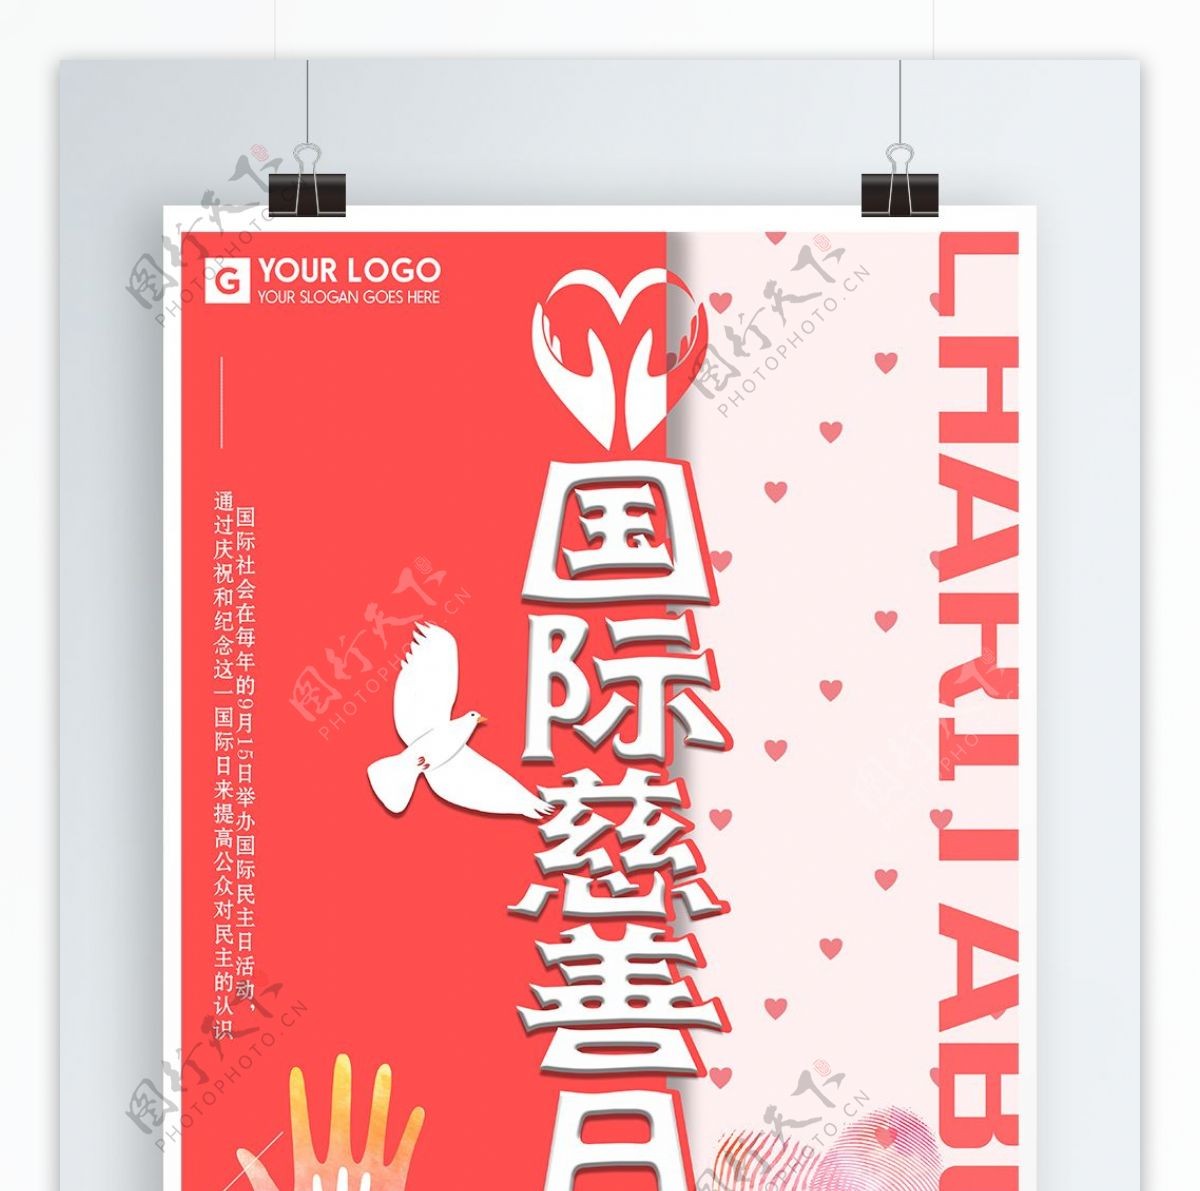 小清新国际慈善日海报